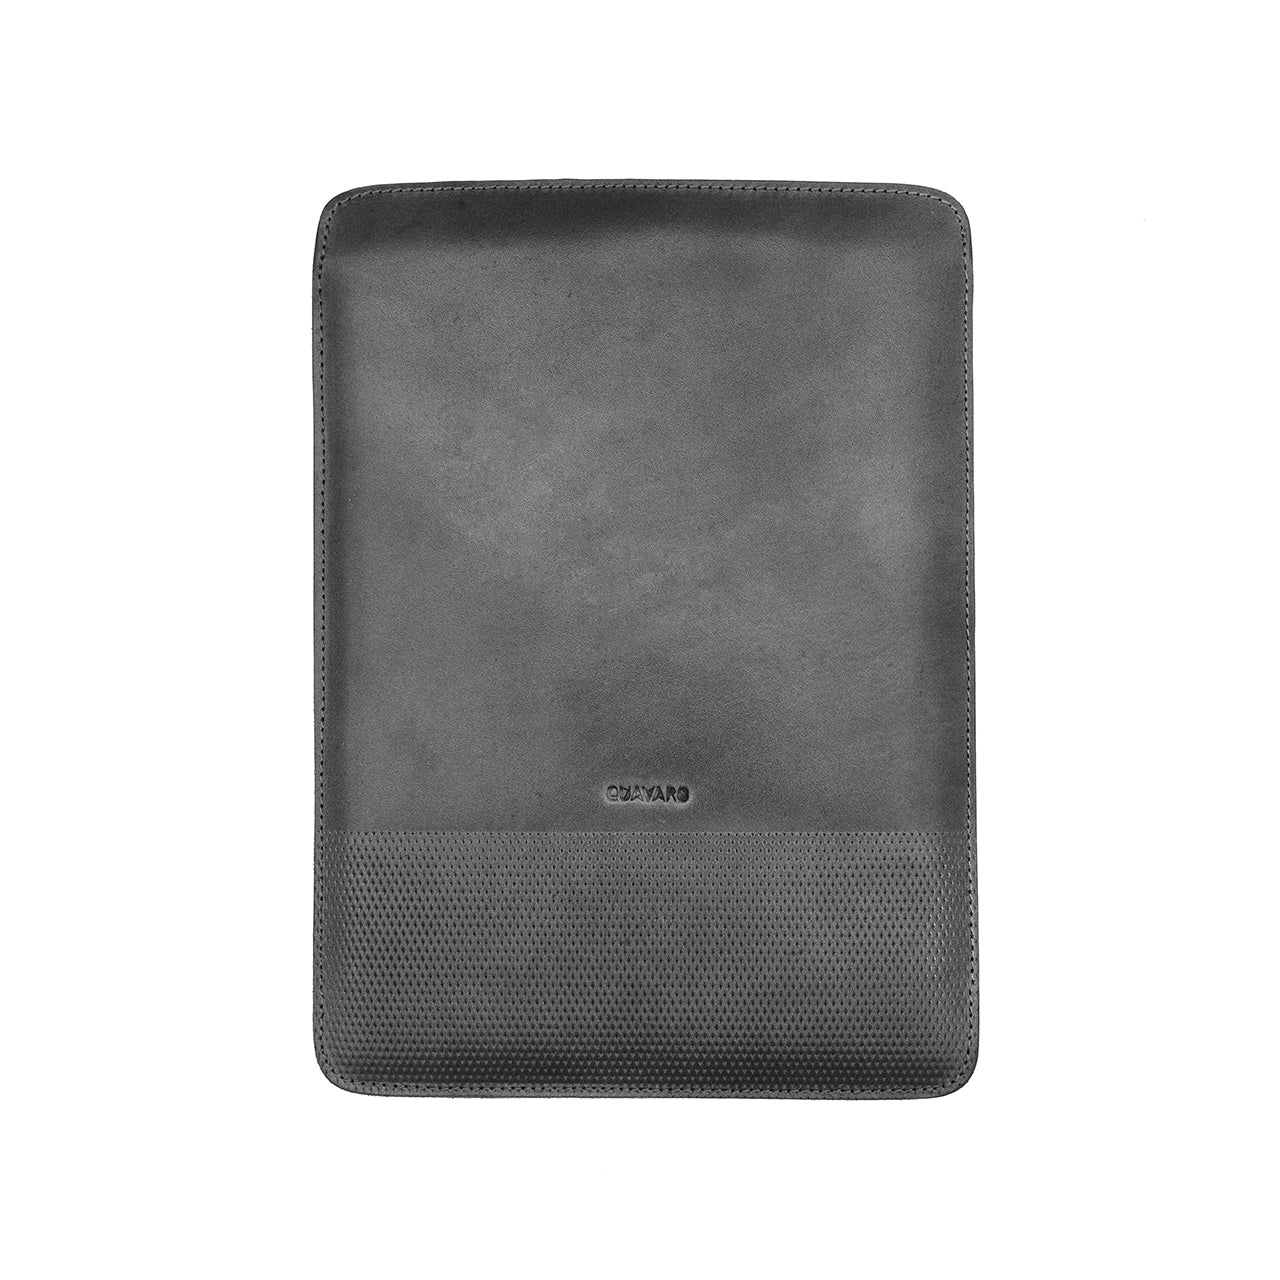 leather-document-holder-quavaro.com